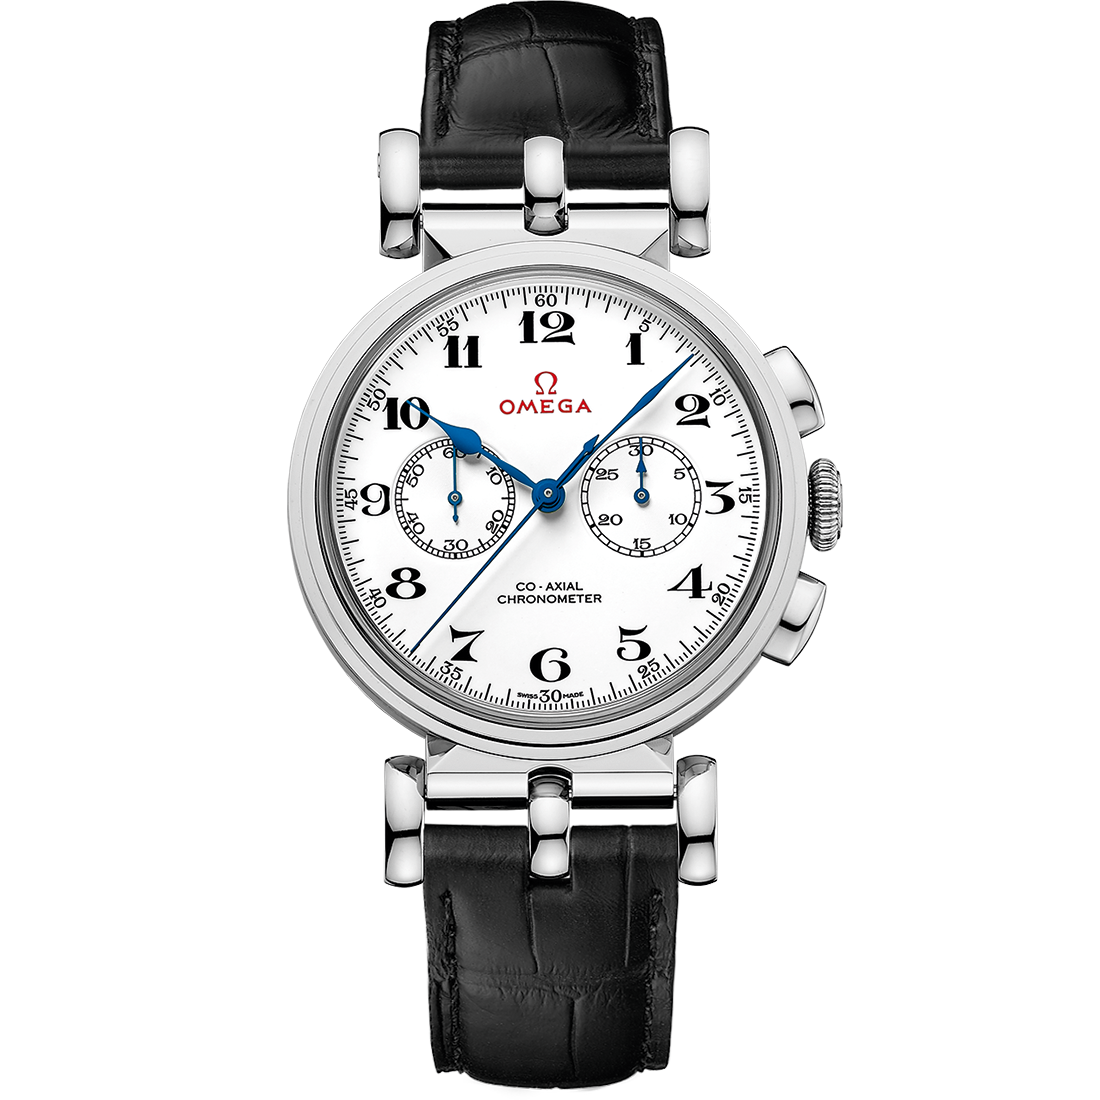 Specialities Chronométreur Officiel Olympique 38 mm, or blanc sur bracelet en cuir - 522.53.38.50.04.001